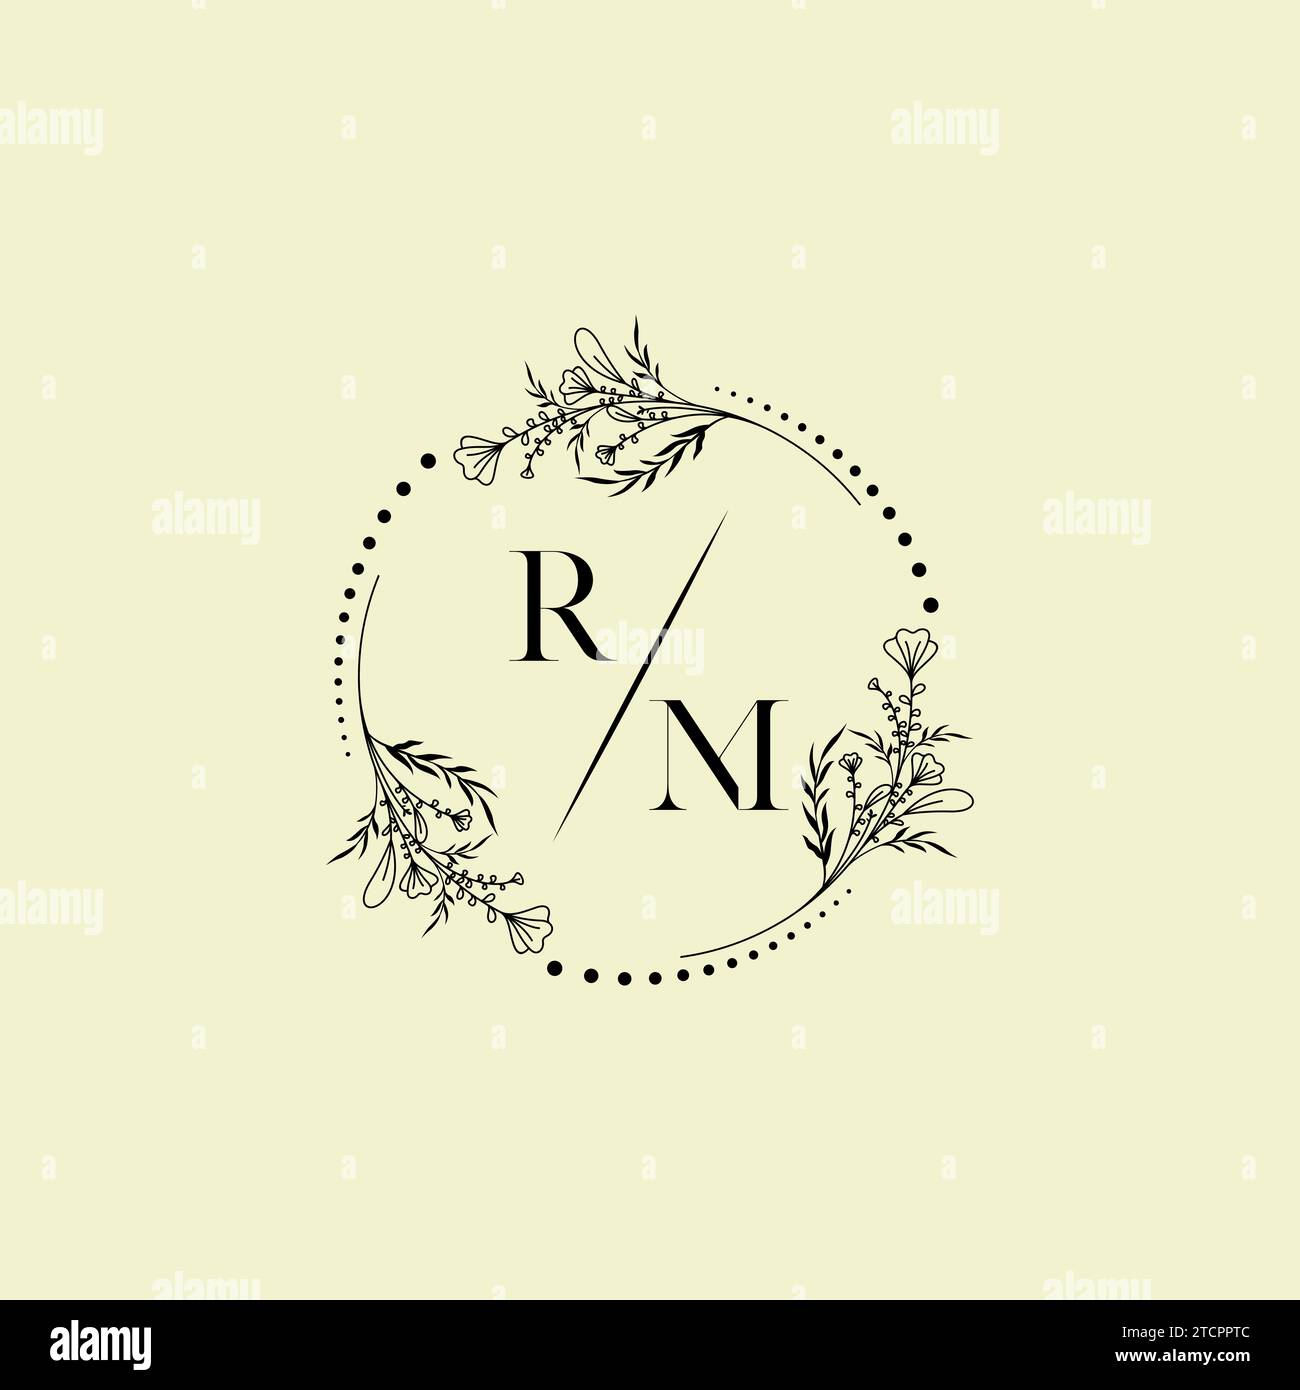 RM Wedding Initial-Logobuchstaben in hochwertigem, professionellem Design, das auf allen Druckmedien gut gedruckt werden kann Stock Vektor